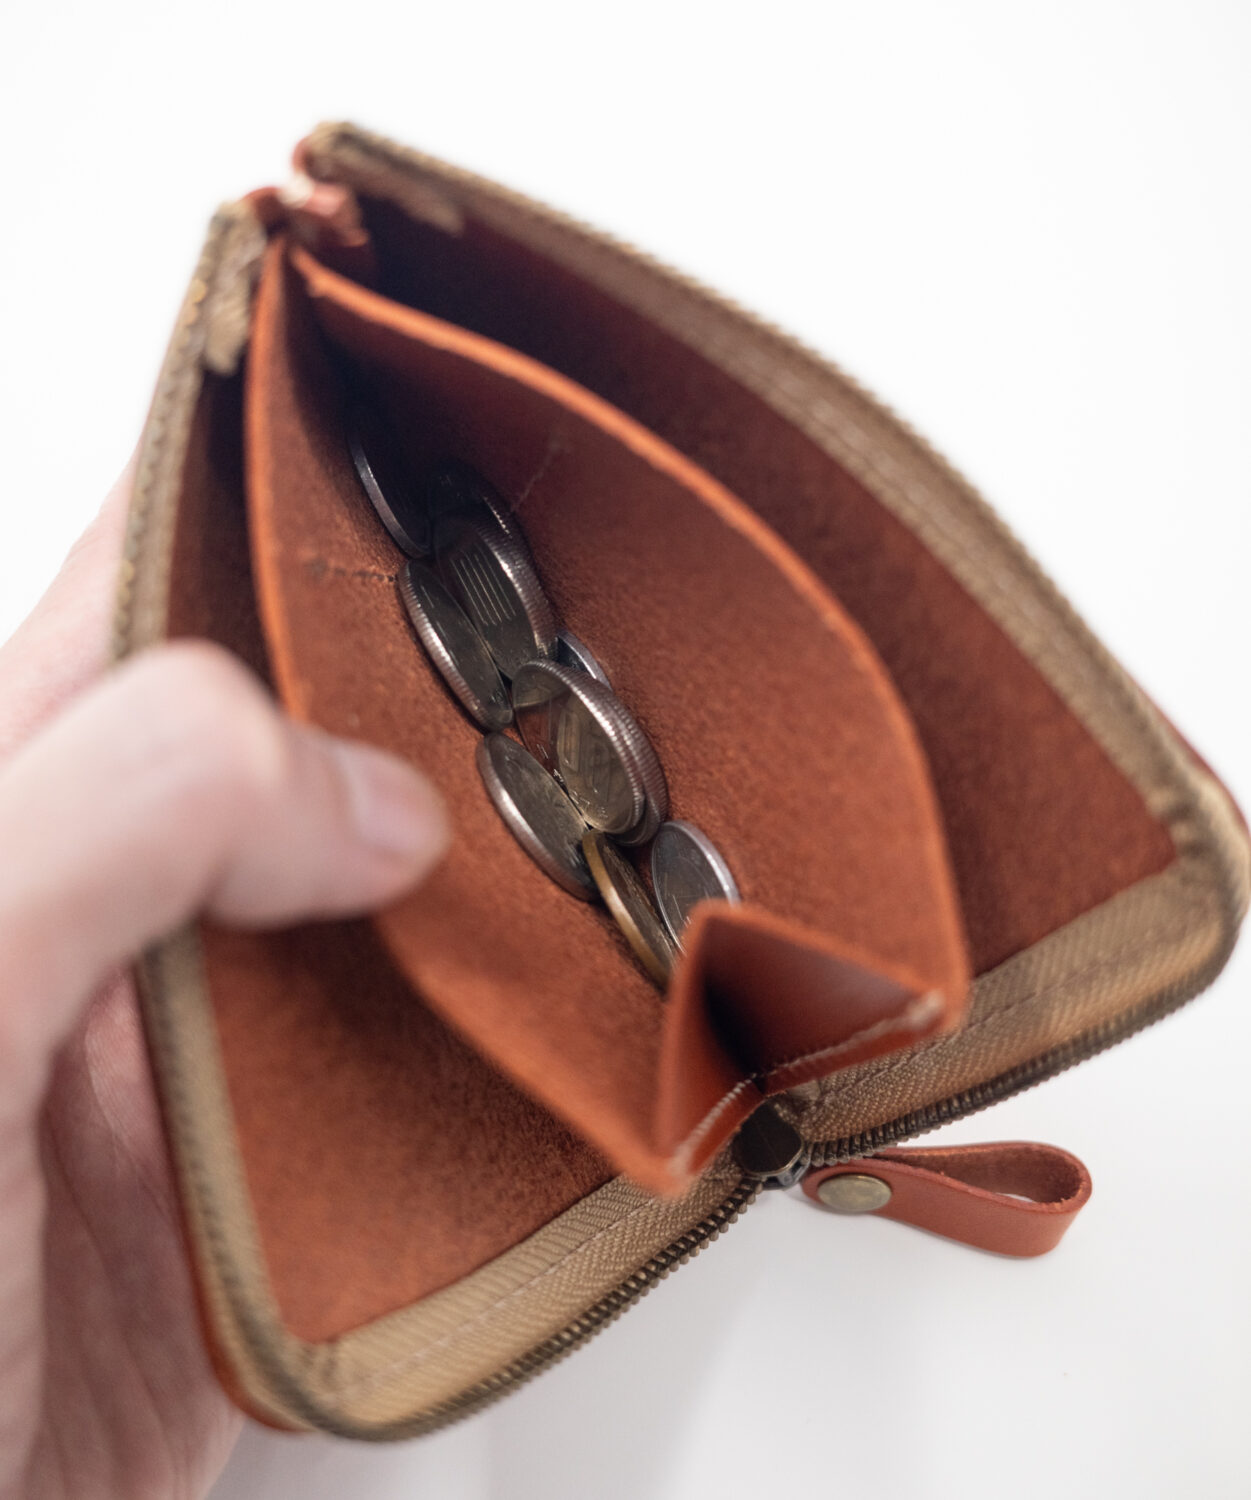 ネイティブ クリエイションのL字ファスナー薄型ミニ財布はマチがあるから小銭を取り出しやすい